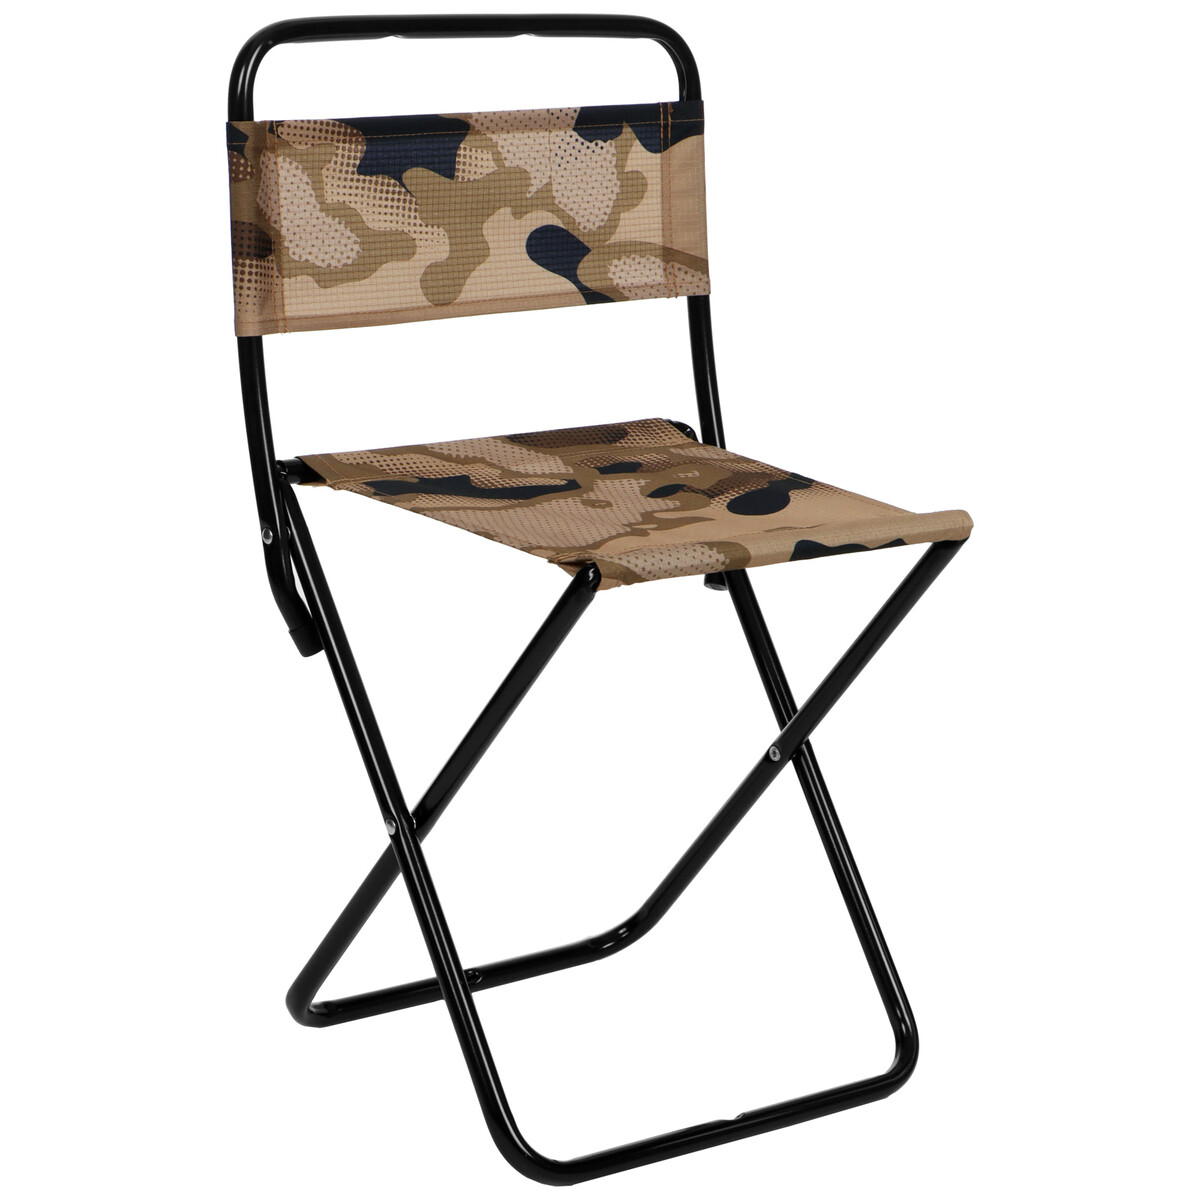 Стул складной походный (пс2/к камуфляж коричневый) стул походный складной на замк опорах ника хант пс хн